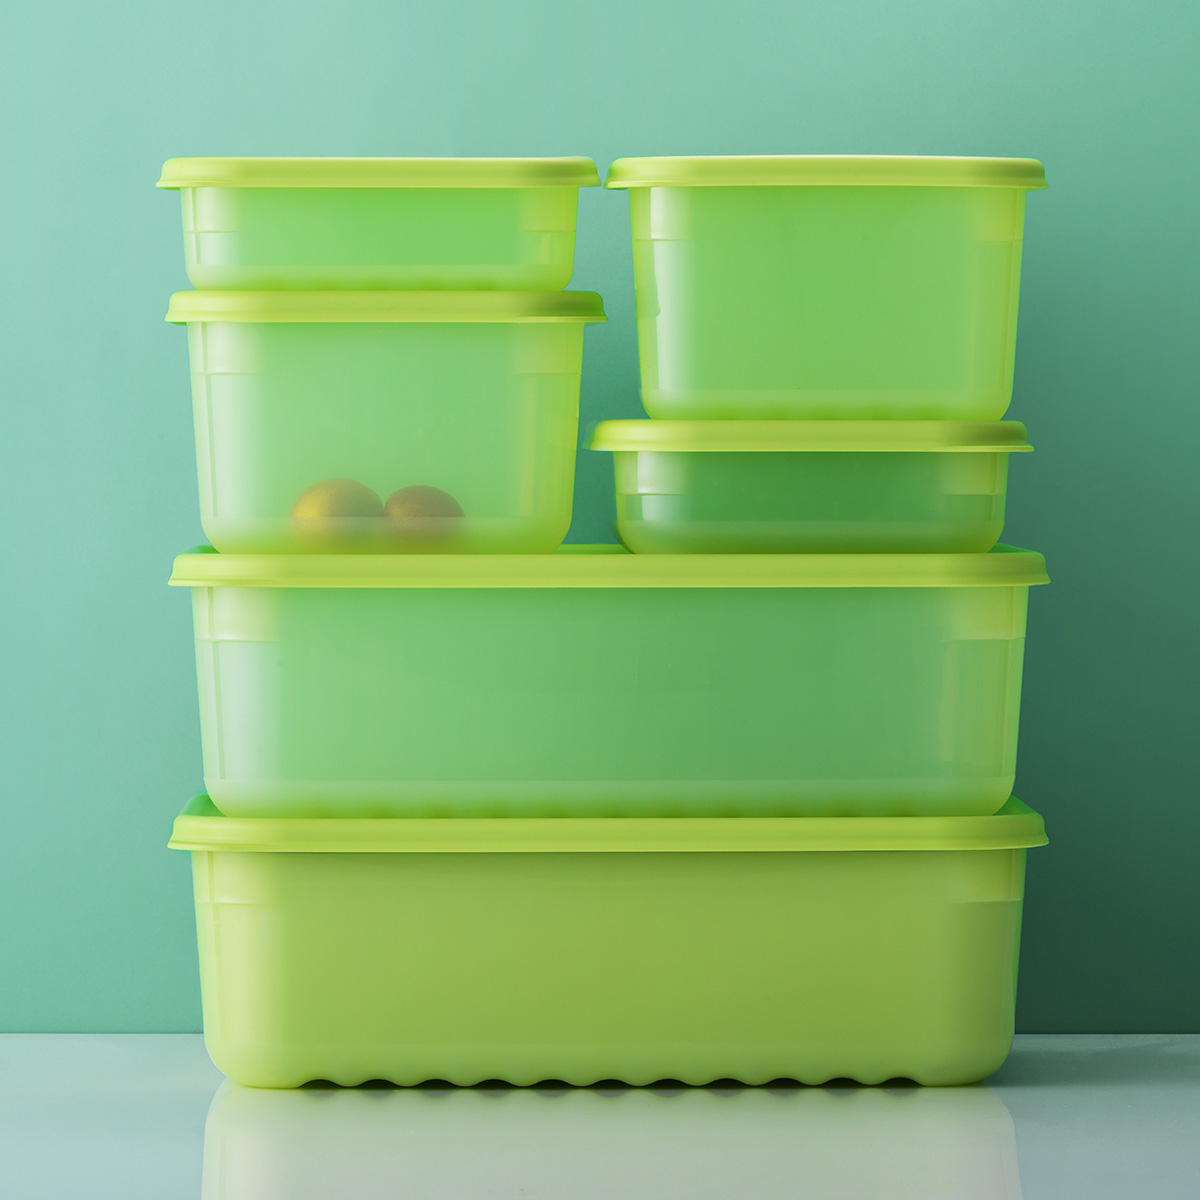 Hộp nhựa bảo quản thực phẩm LocknLock Smart Keep Fresh Food Container, Hàng chính hãng, giữ tươi mát đến 31 ngày - JoyMall